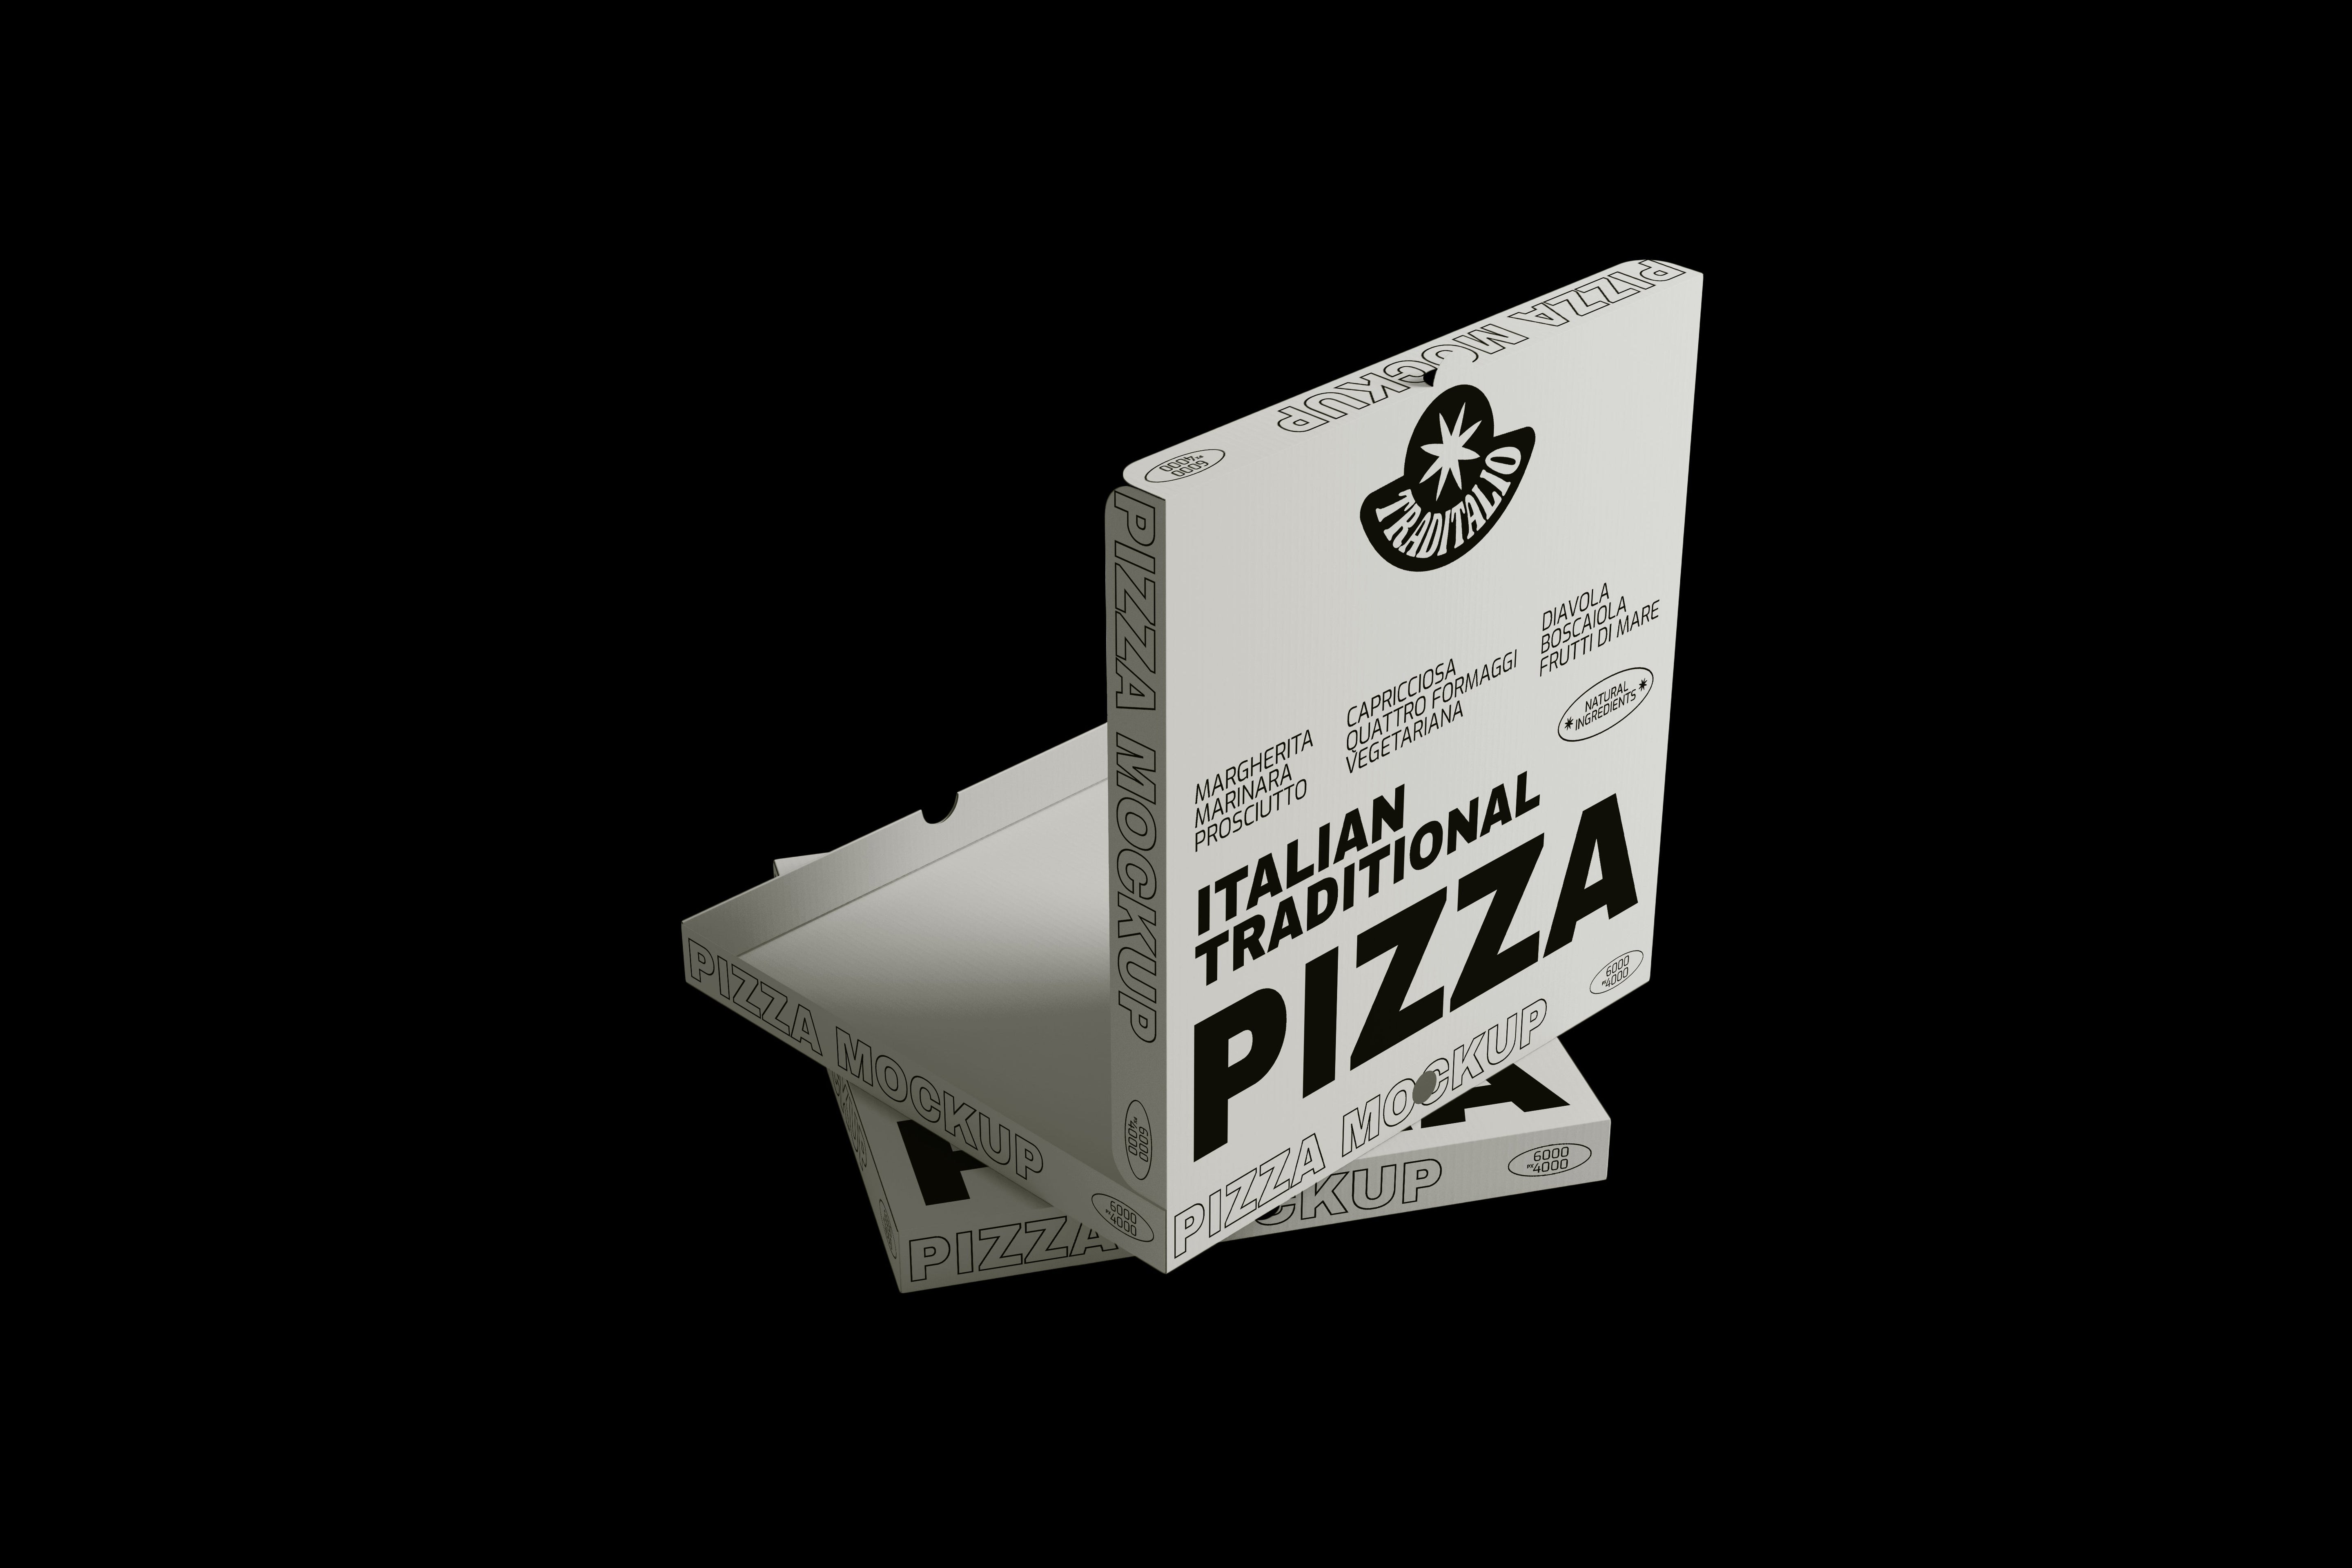 Pizza Box Mockups - 3 in 1